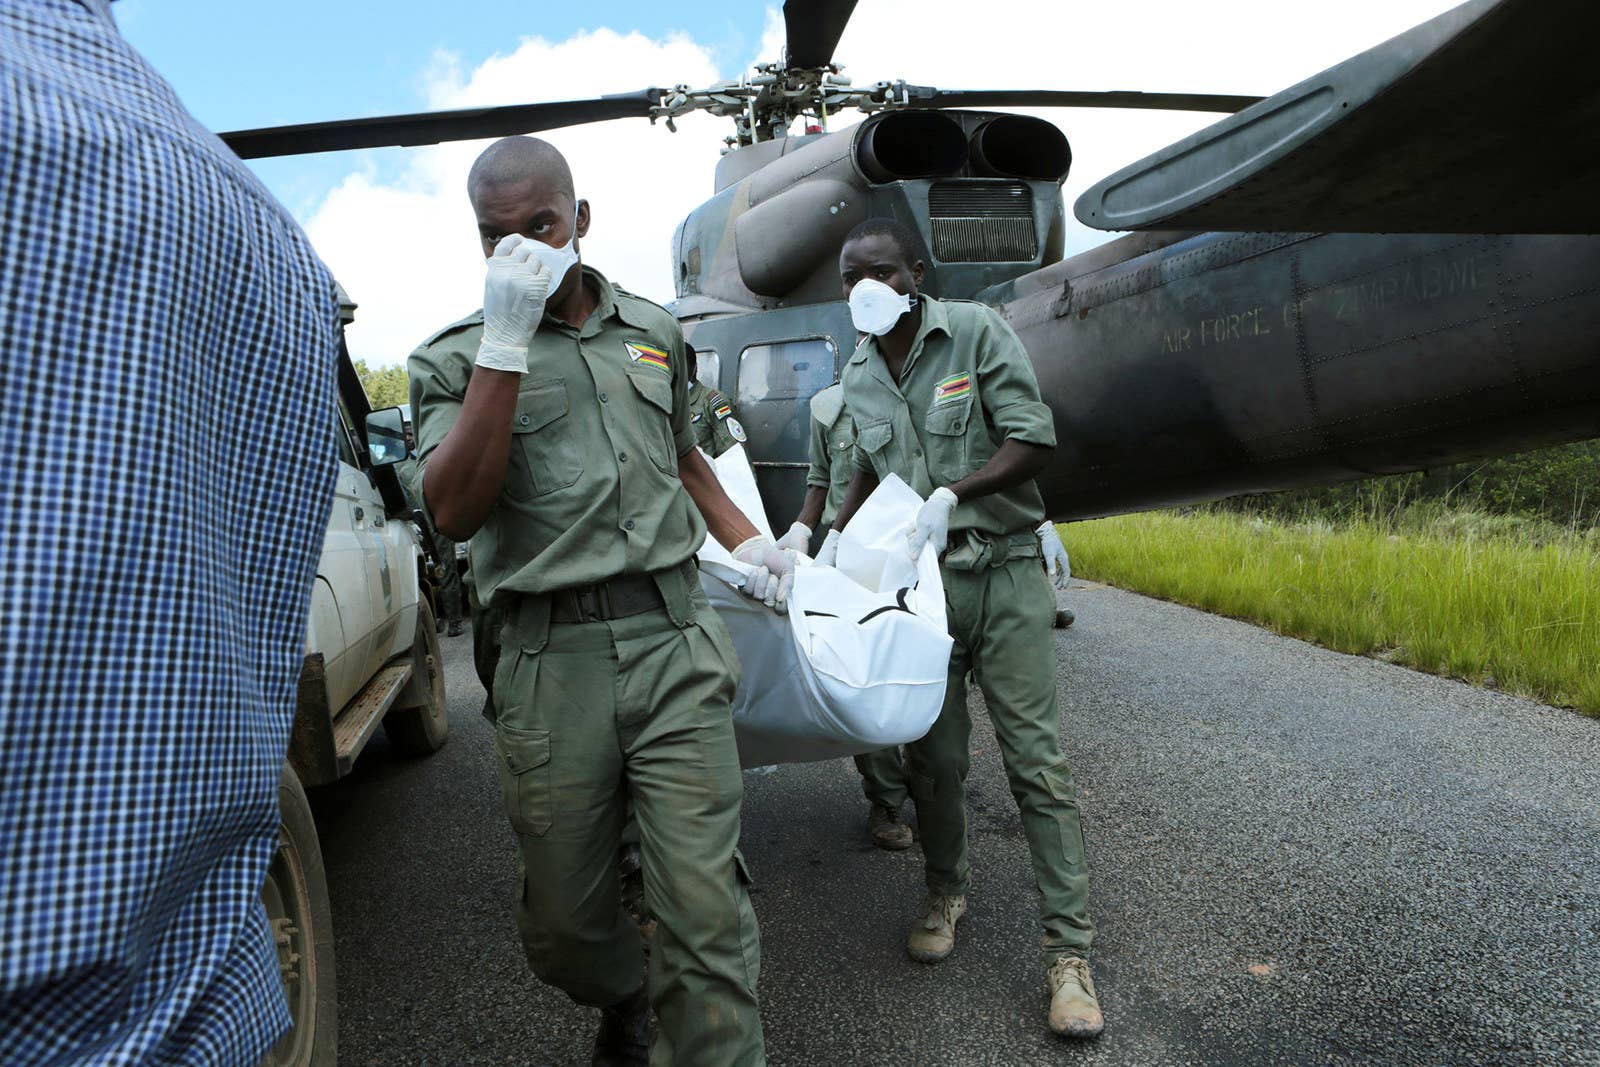 Equipe de resgate tira um corpo de um helicóptero militar, em Chimanimani, no dia 20.